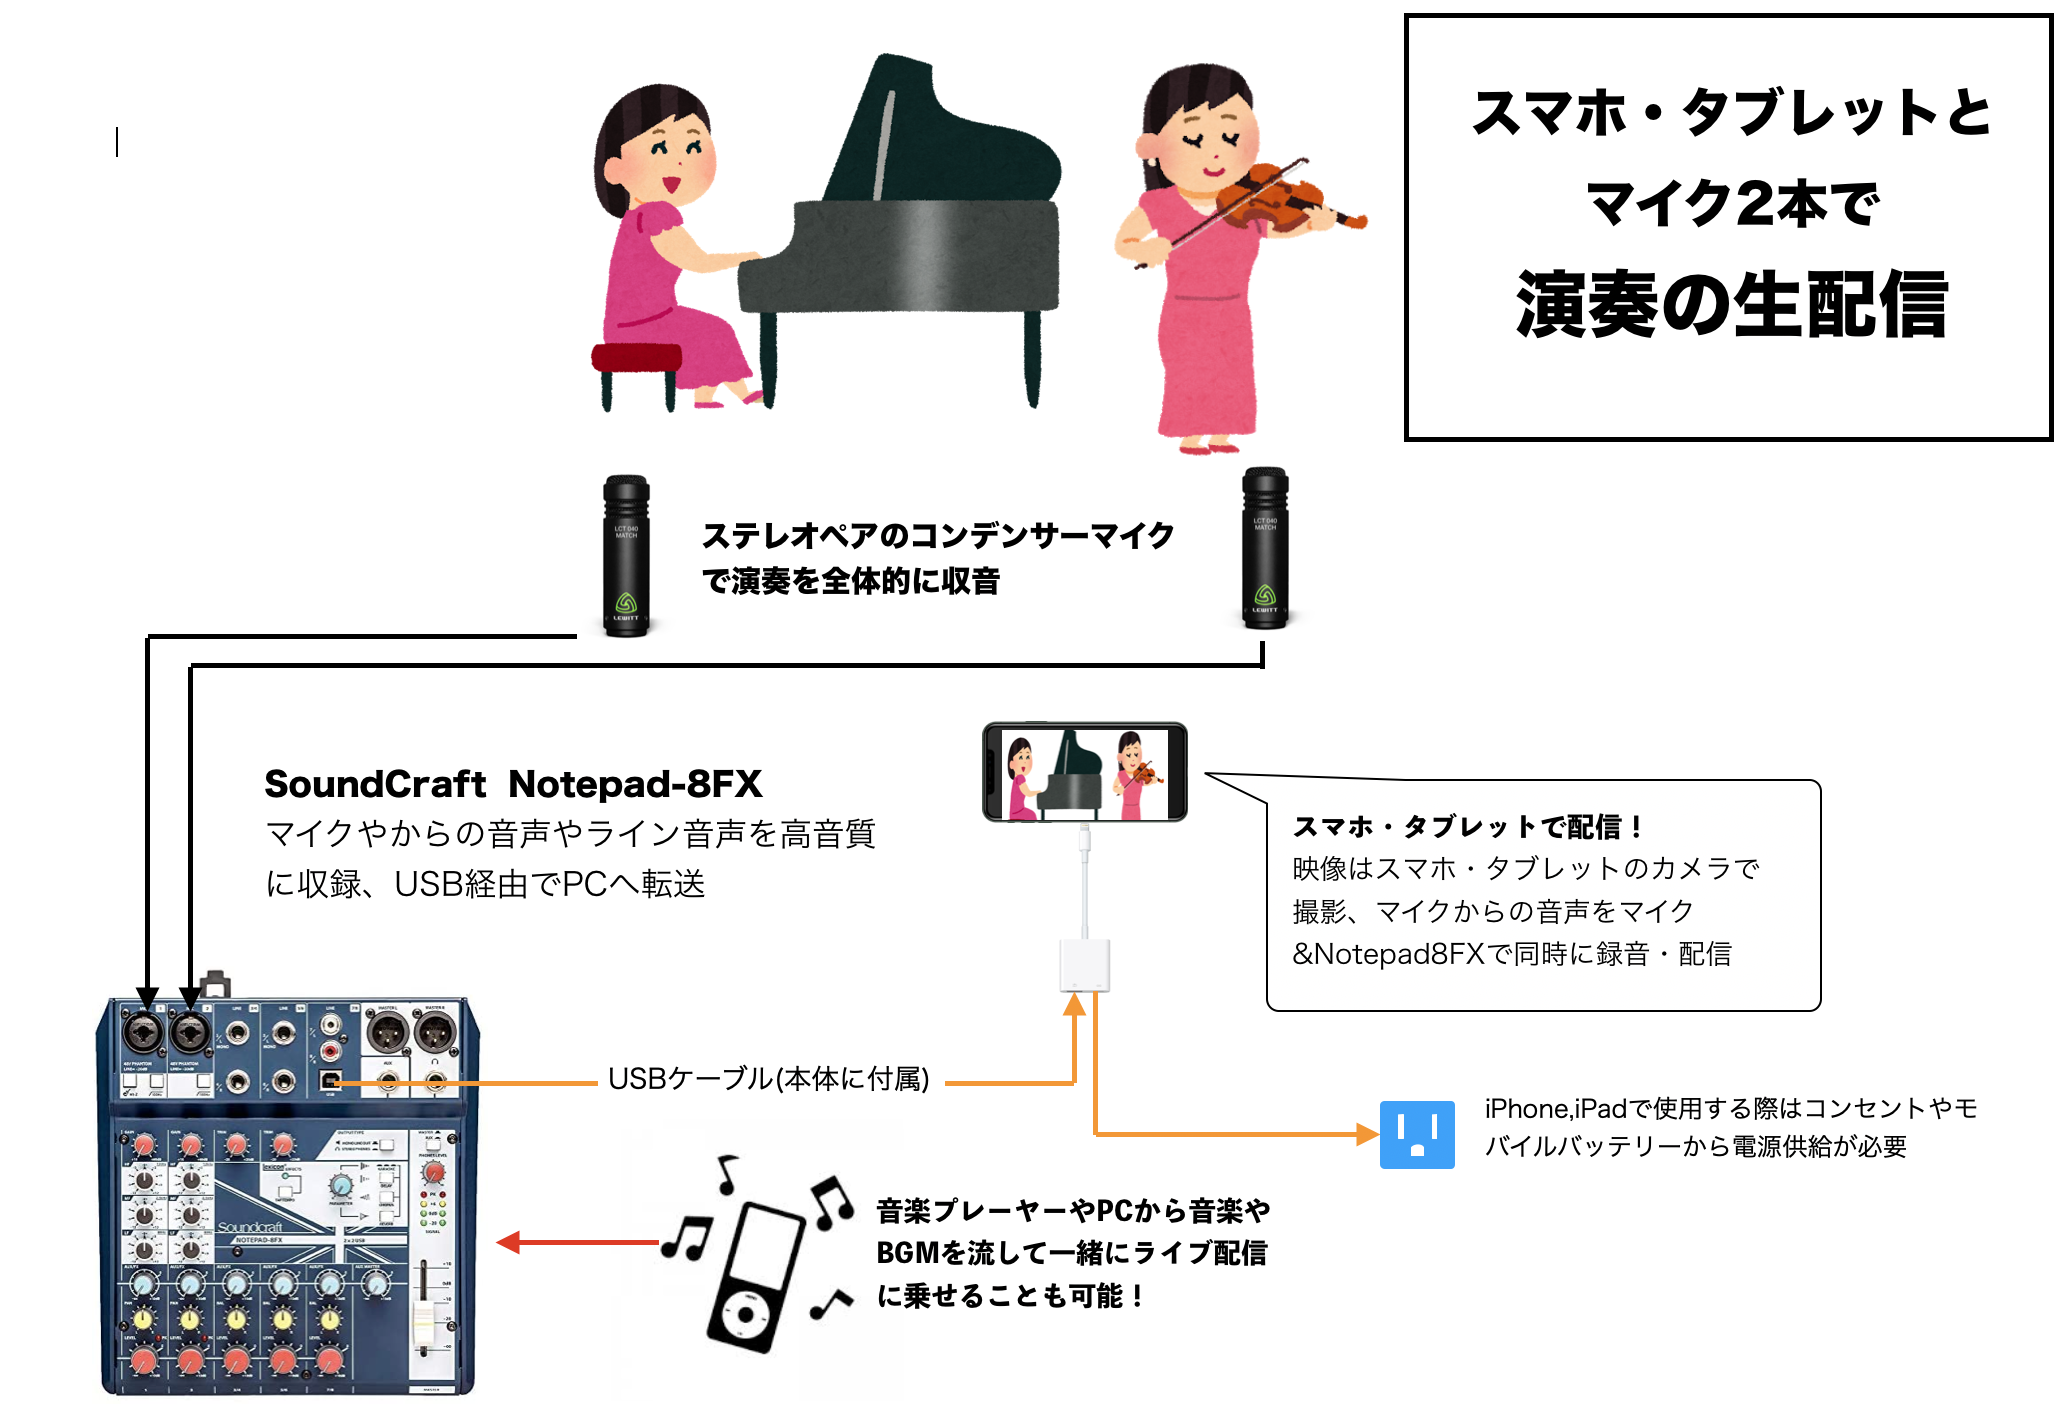 どっちが本命 人気の配信用ミキサーyamaha Ag06とsoundcraft Notepad 8fxを徹底比較 名古屋パルコ店 店舗情報 島村楽器